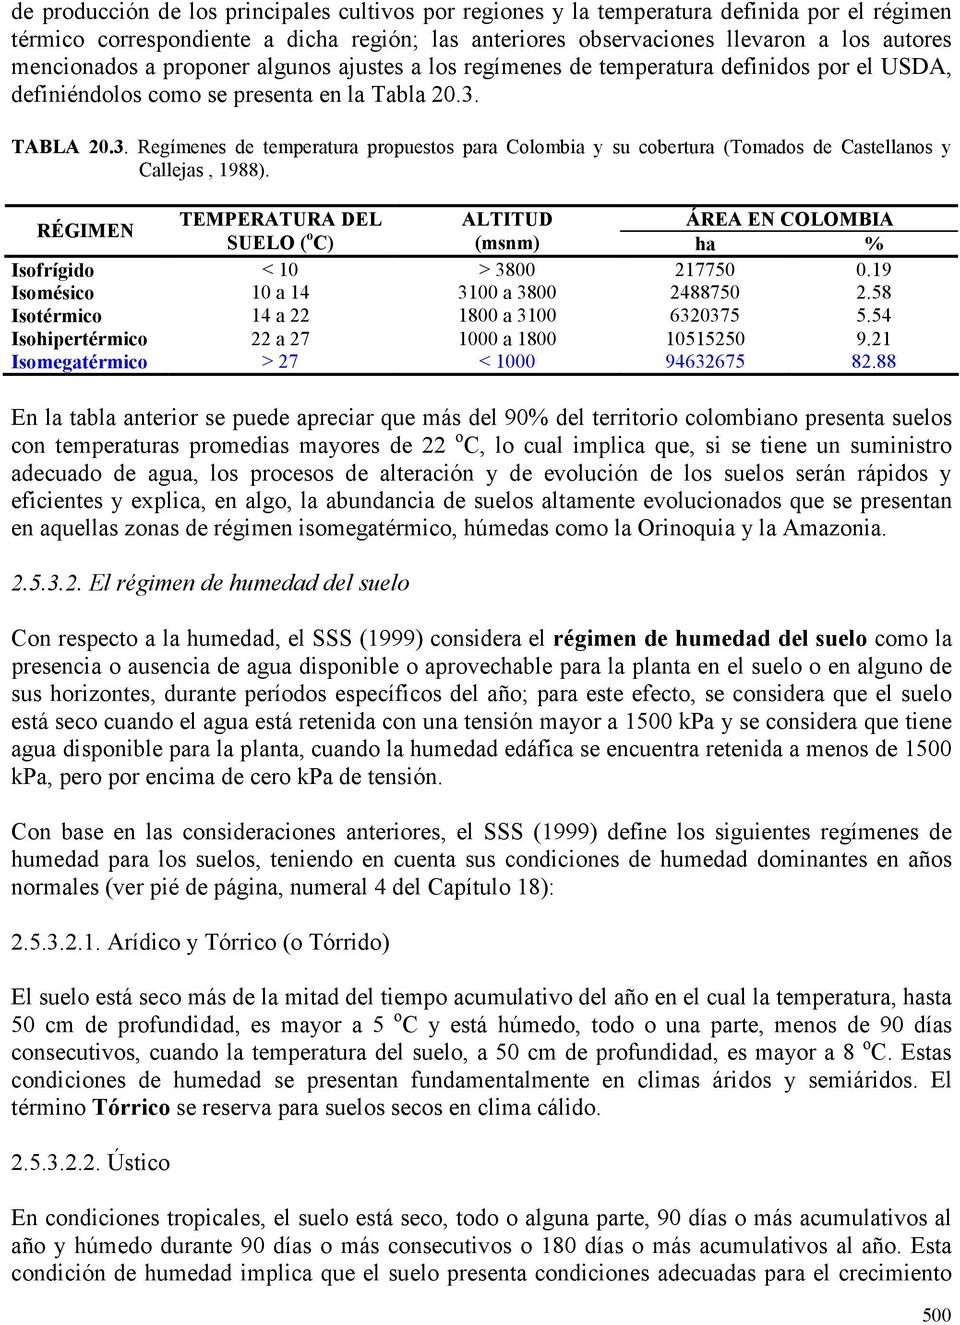 TABLA 20.3. Regímenes de temperatura propuestos para Colombia y su cobertura (Tomados de Castellanos y Callejas, 1988).